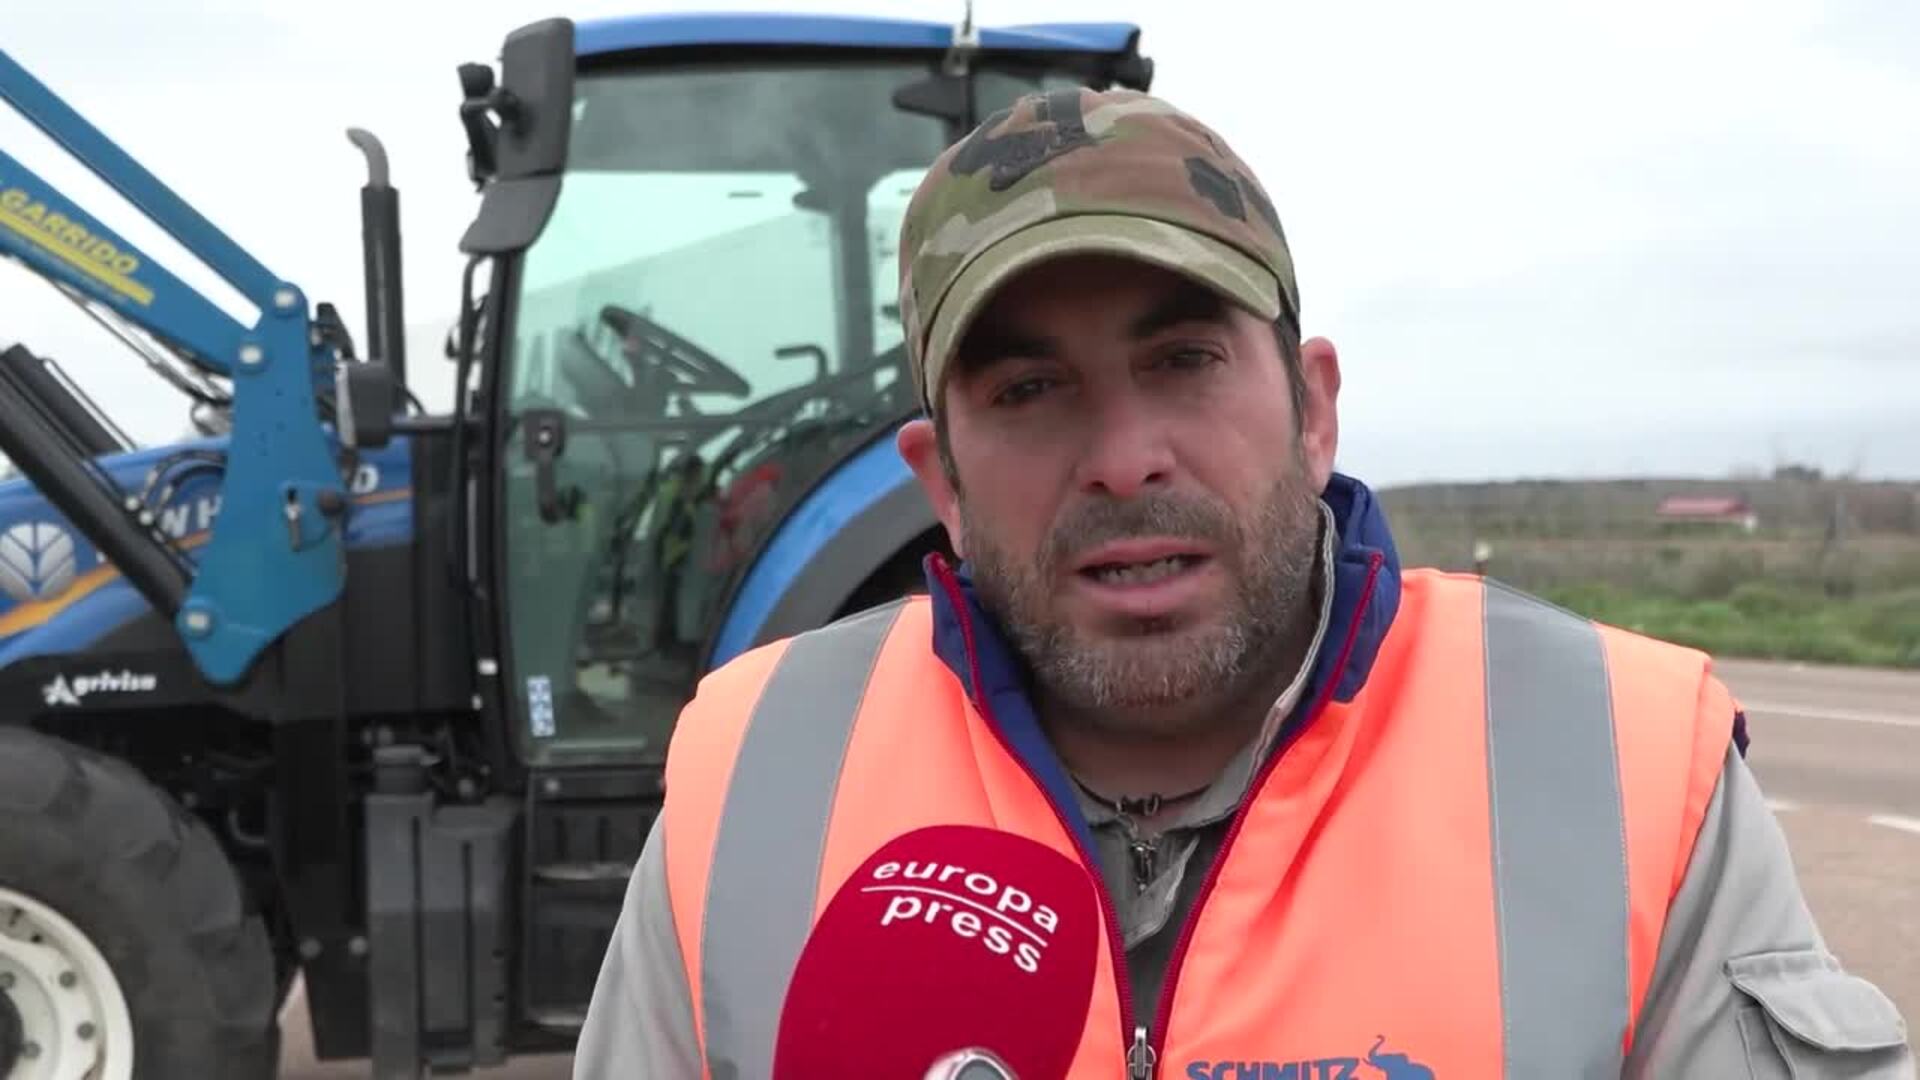 Agricultor extremeño: "Seguiremos peleando aunque seamos pocos porque la lucha no va a decaer"